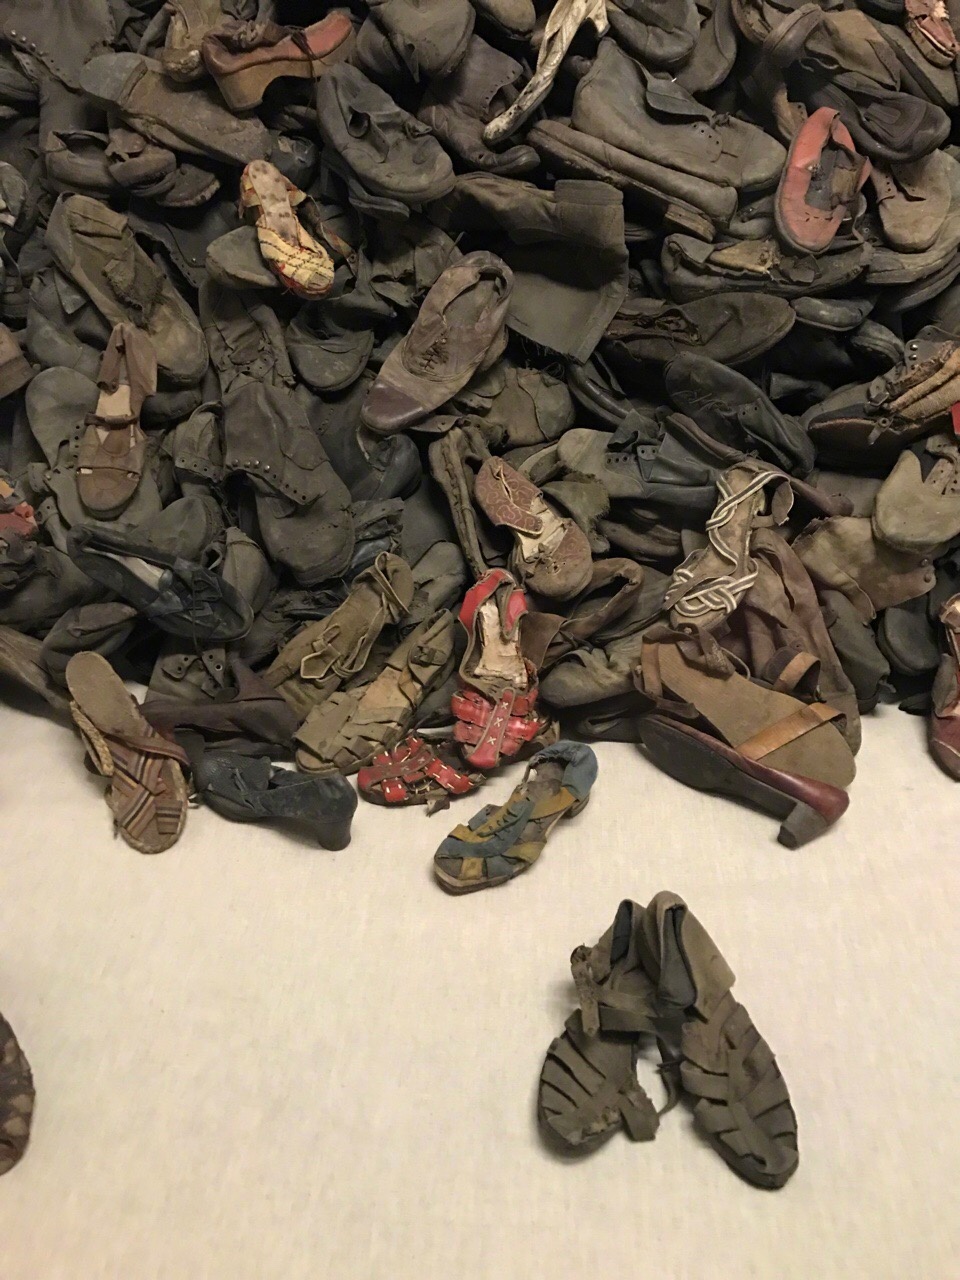 奥斯维辛纪念馆里堆积如山的鞋子